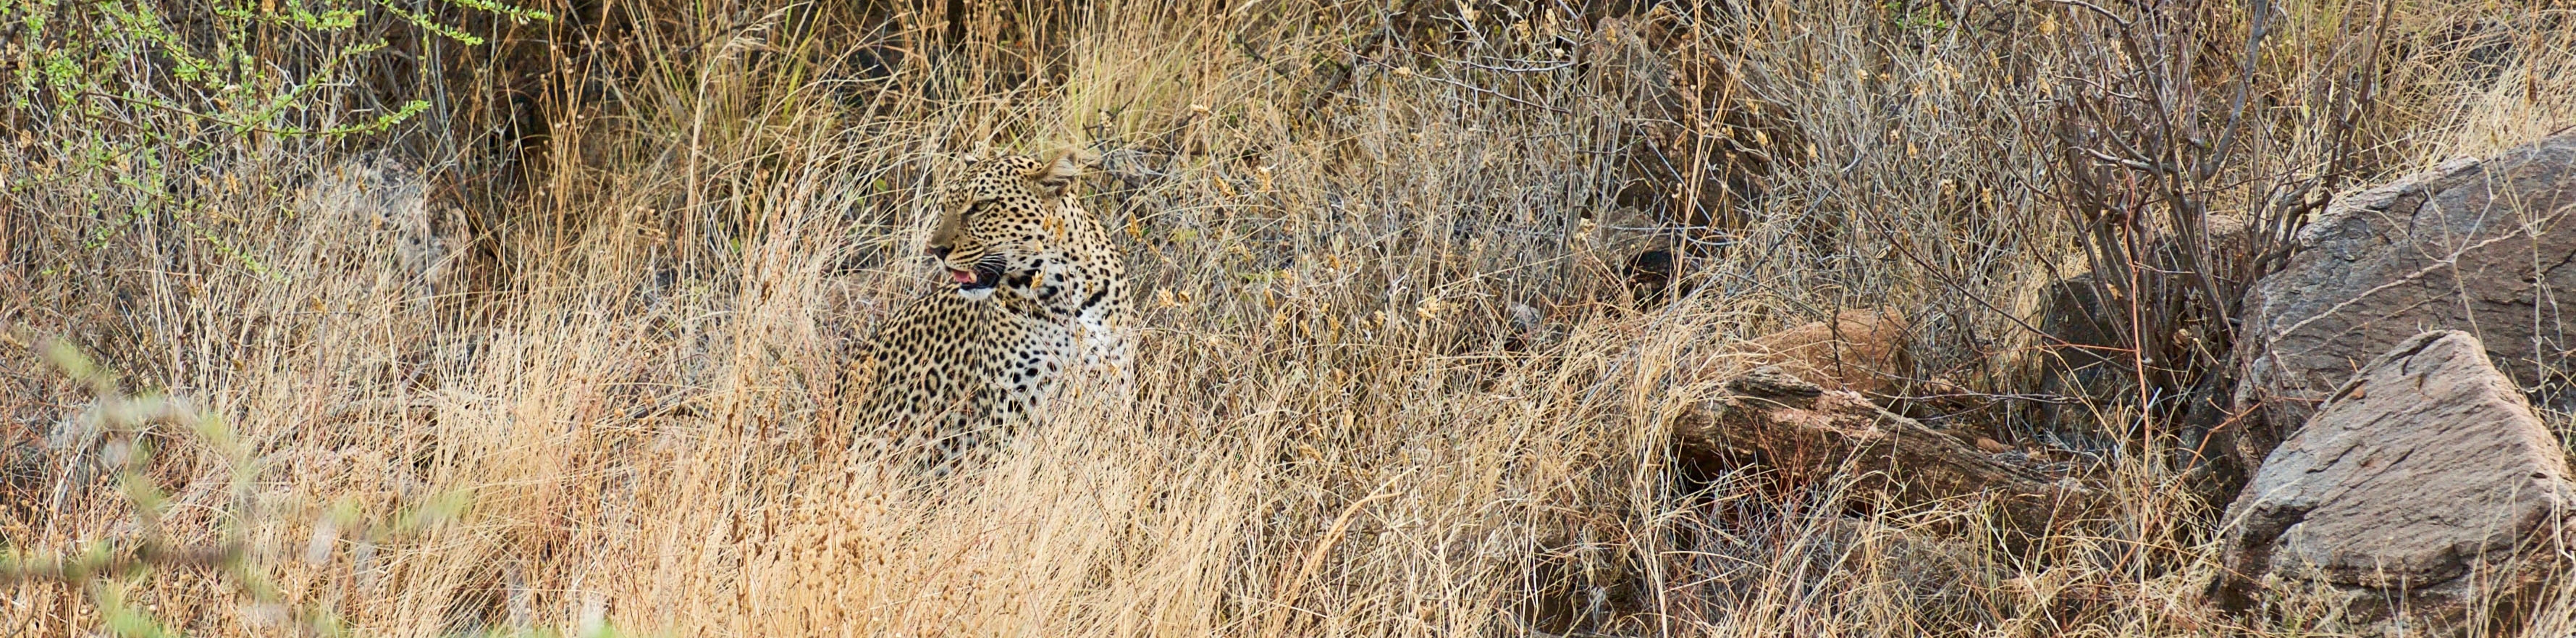 Leopard in Samburu | Transtrek Safaris